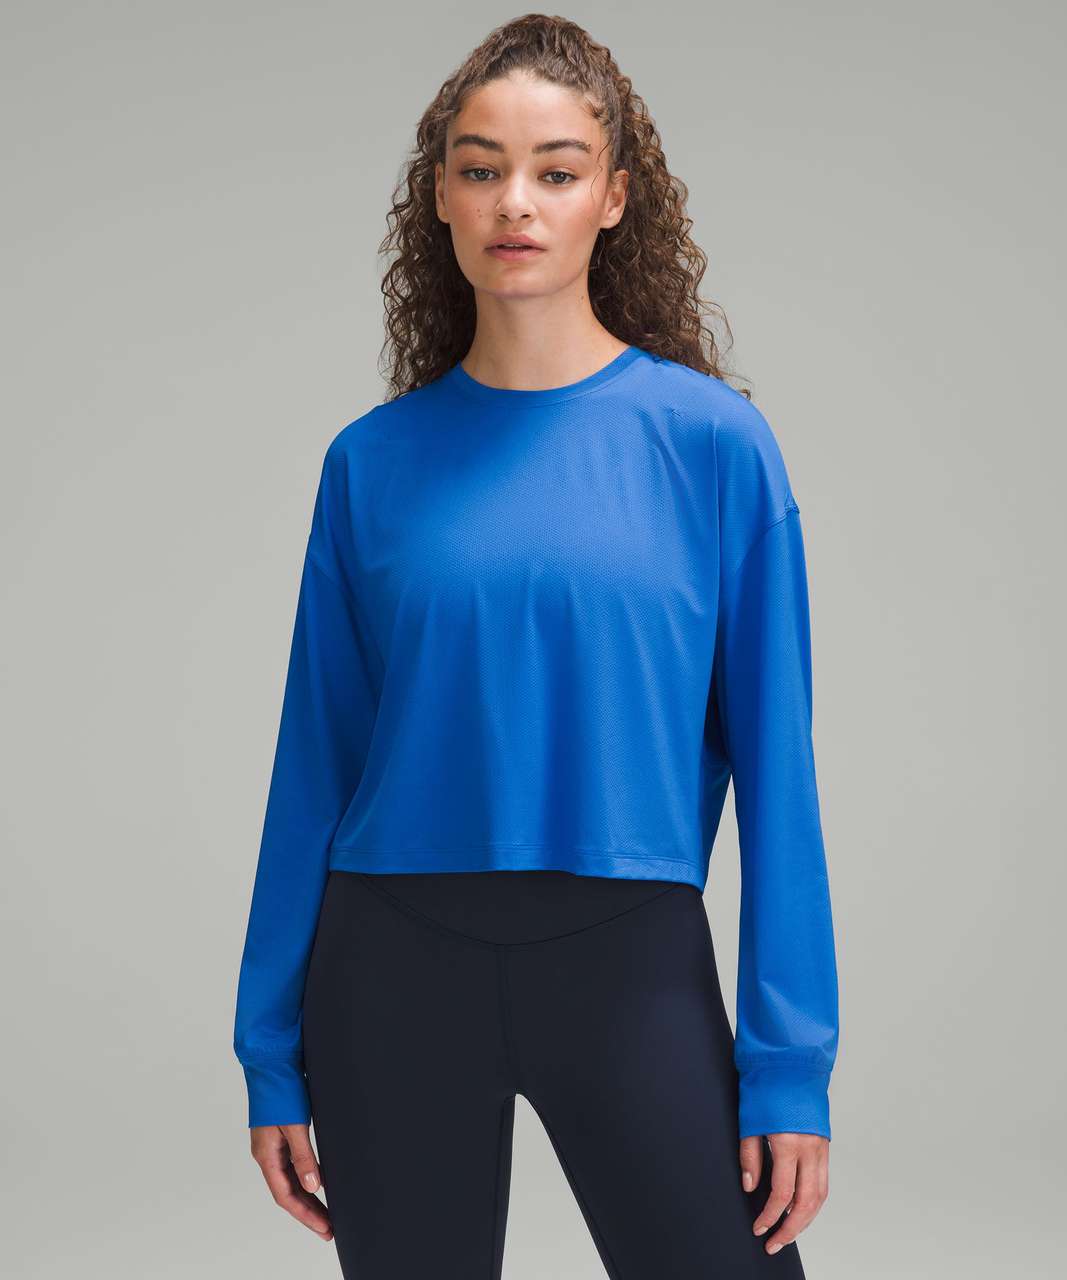 Lululemon Abrasion-Resistant Training Long-Sleeve Shirt - Blazer Blue Tone